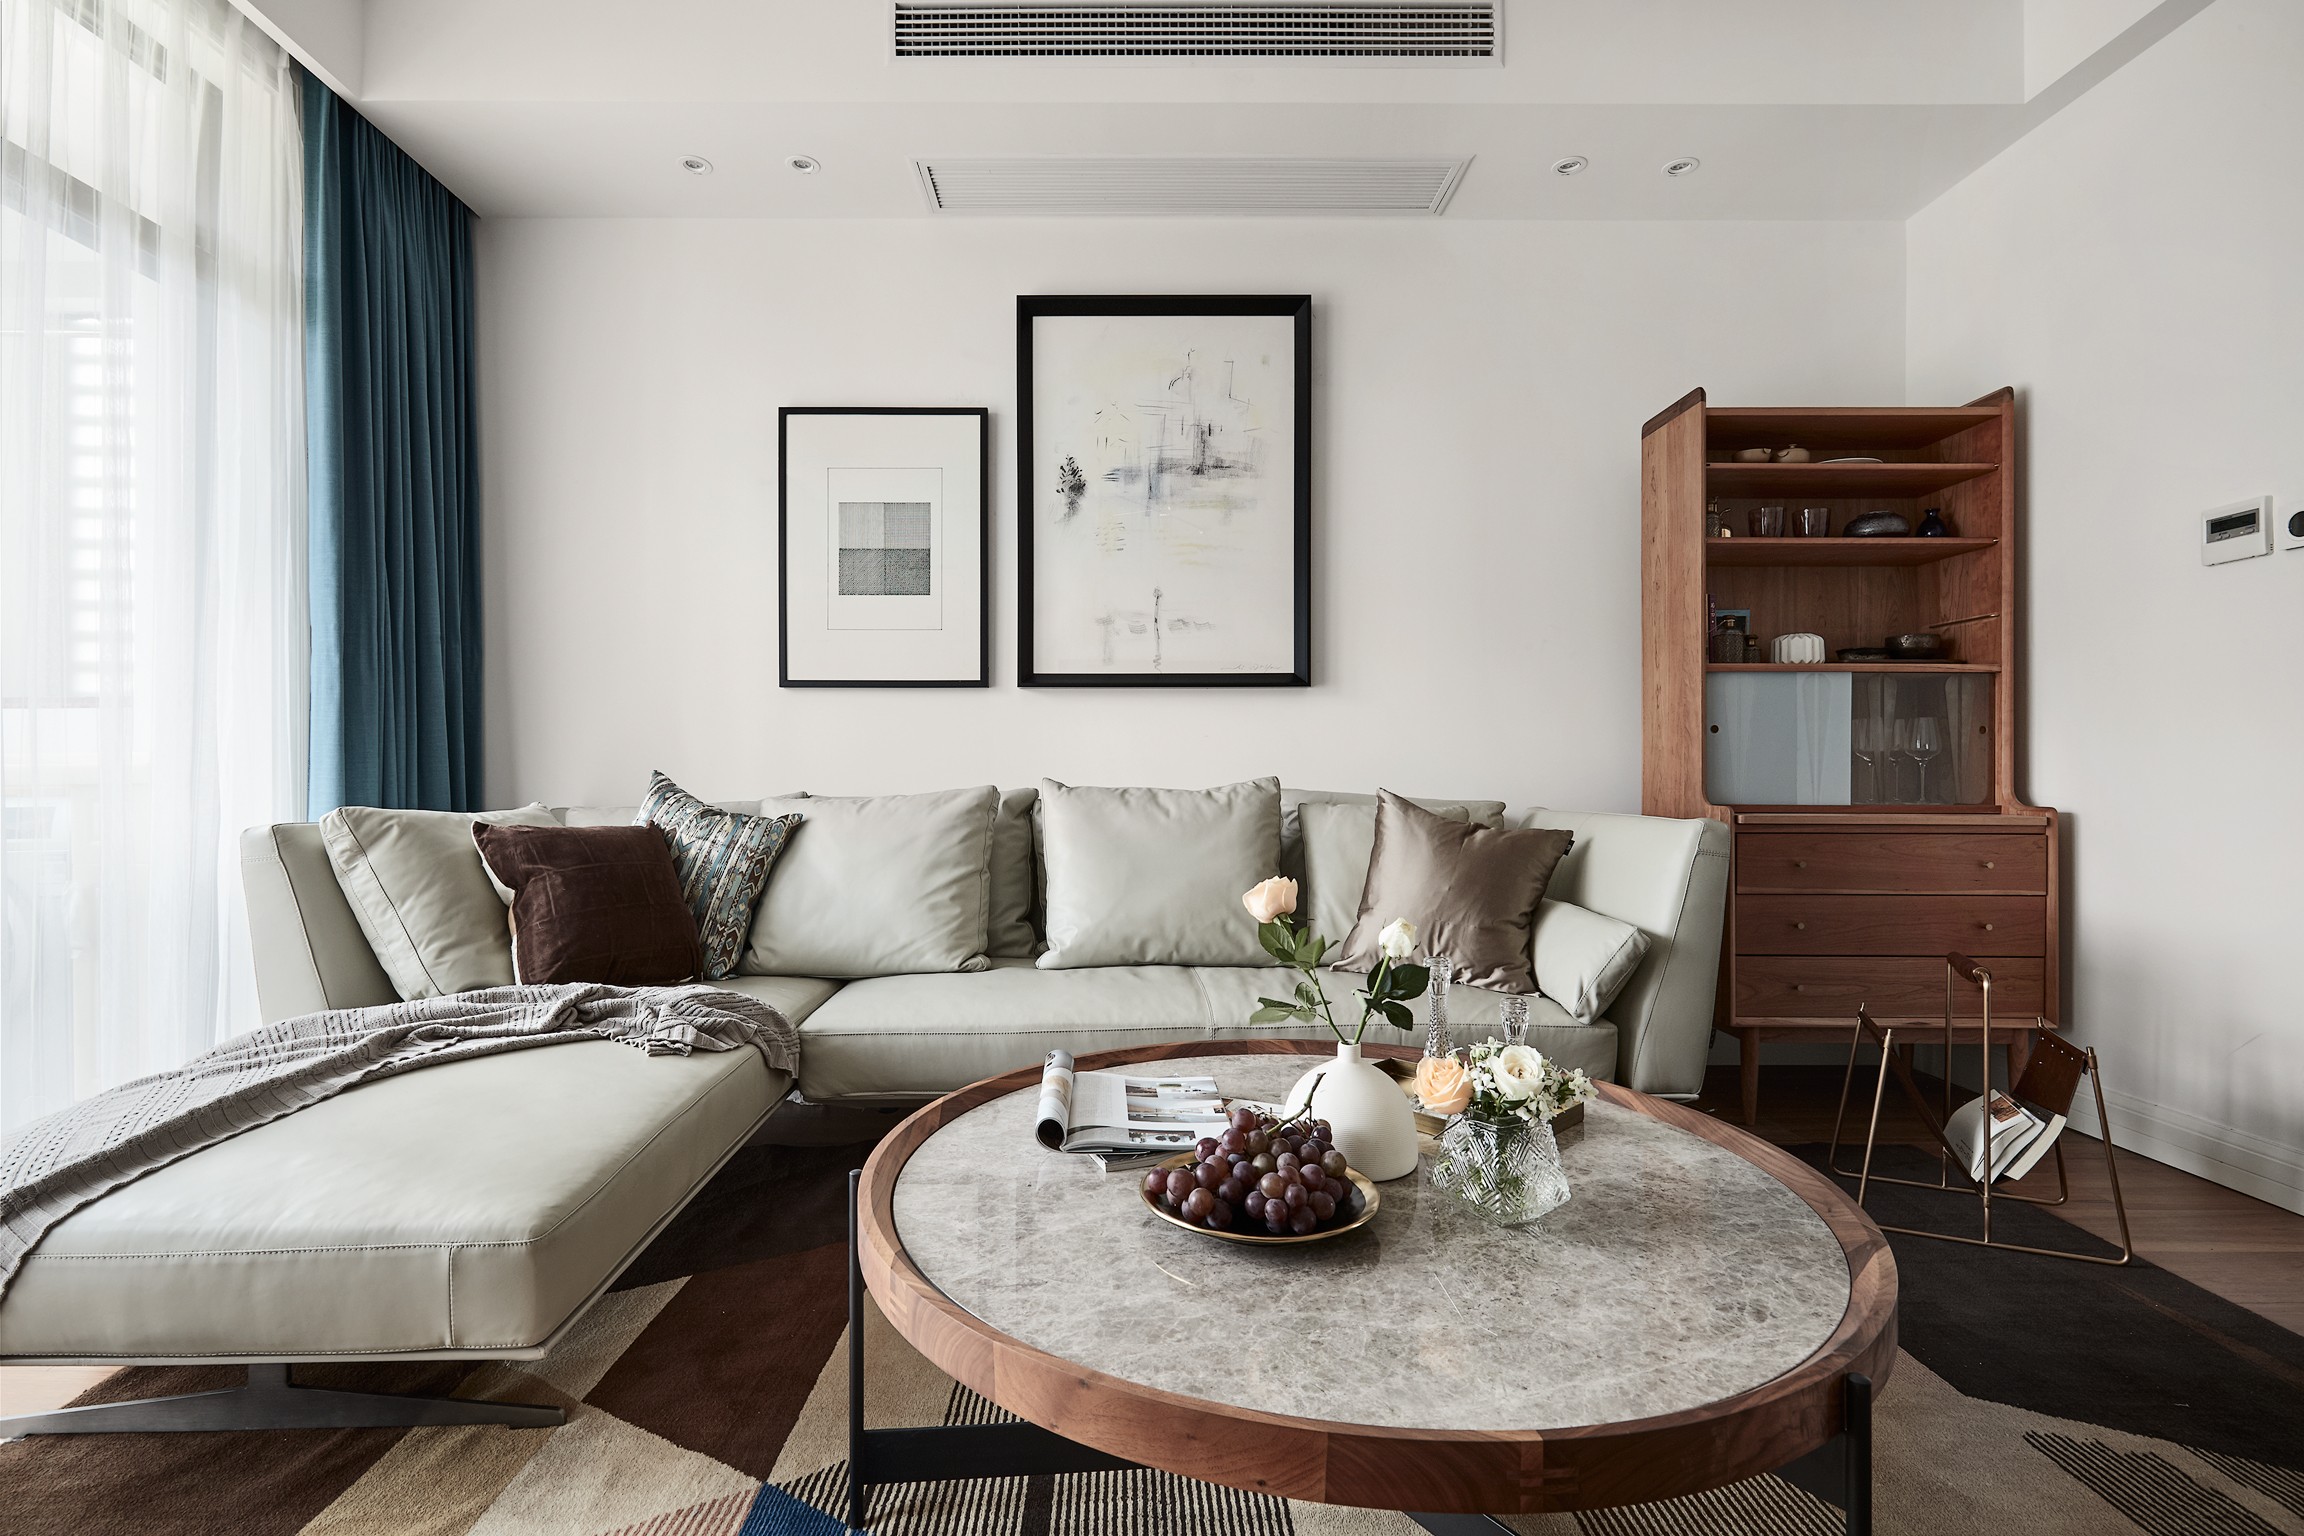 客厅整体设计带来清爽明快之意，皮质沙发搭配金色背景墙，温馨色感令人十分舒畅。